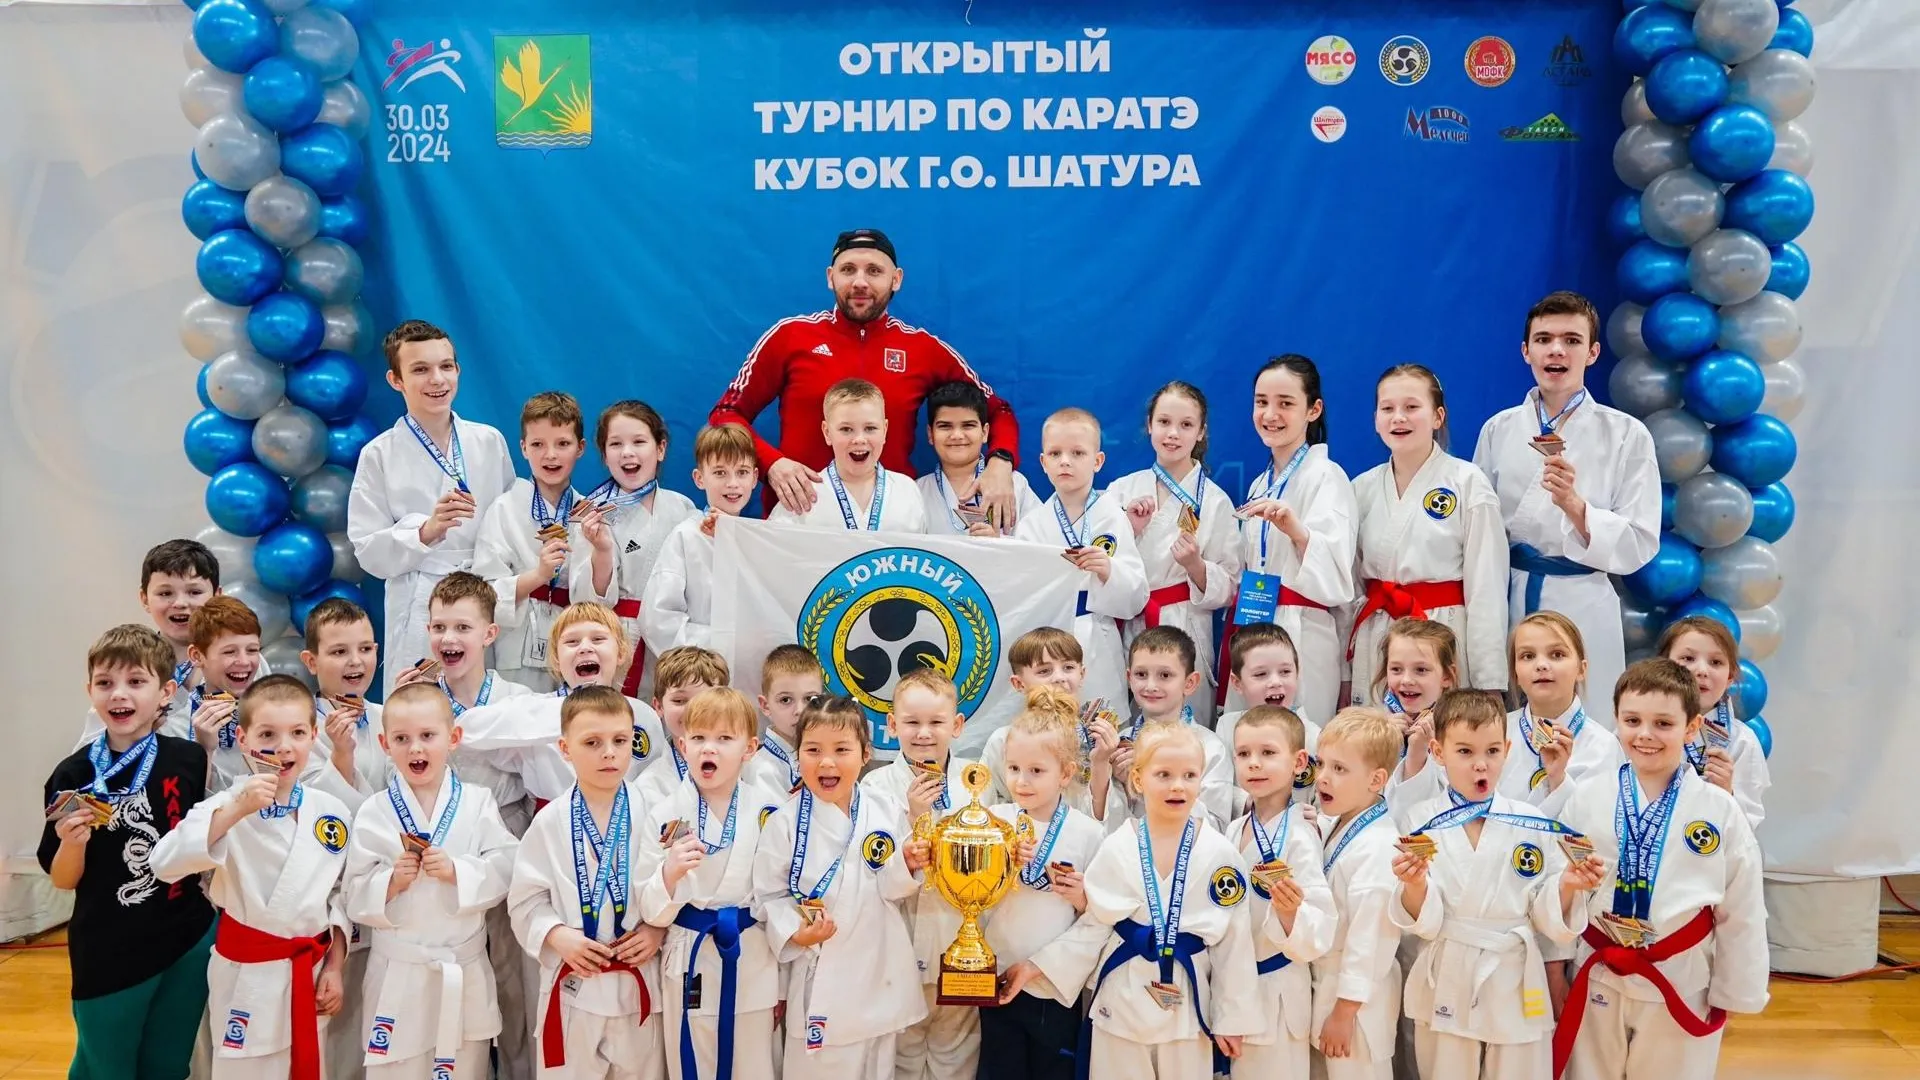 Более 100 юных спортсменов поучаствовали в открытом турнире по карате в Шатуре